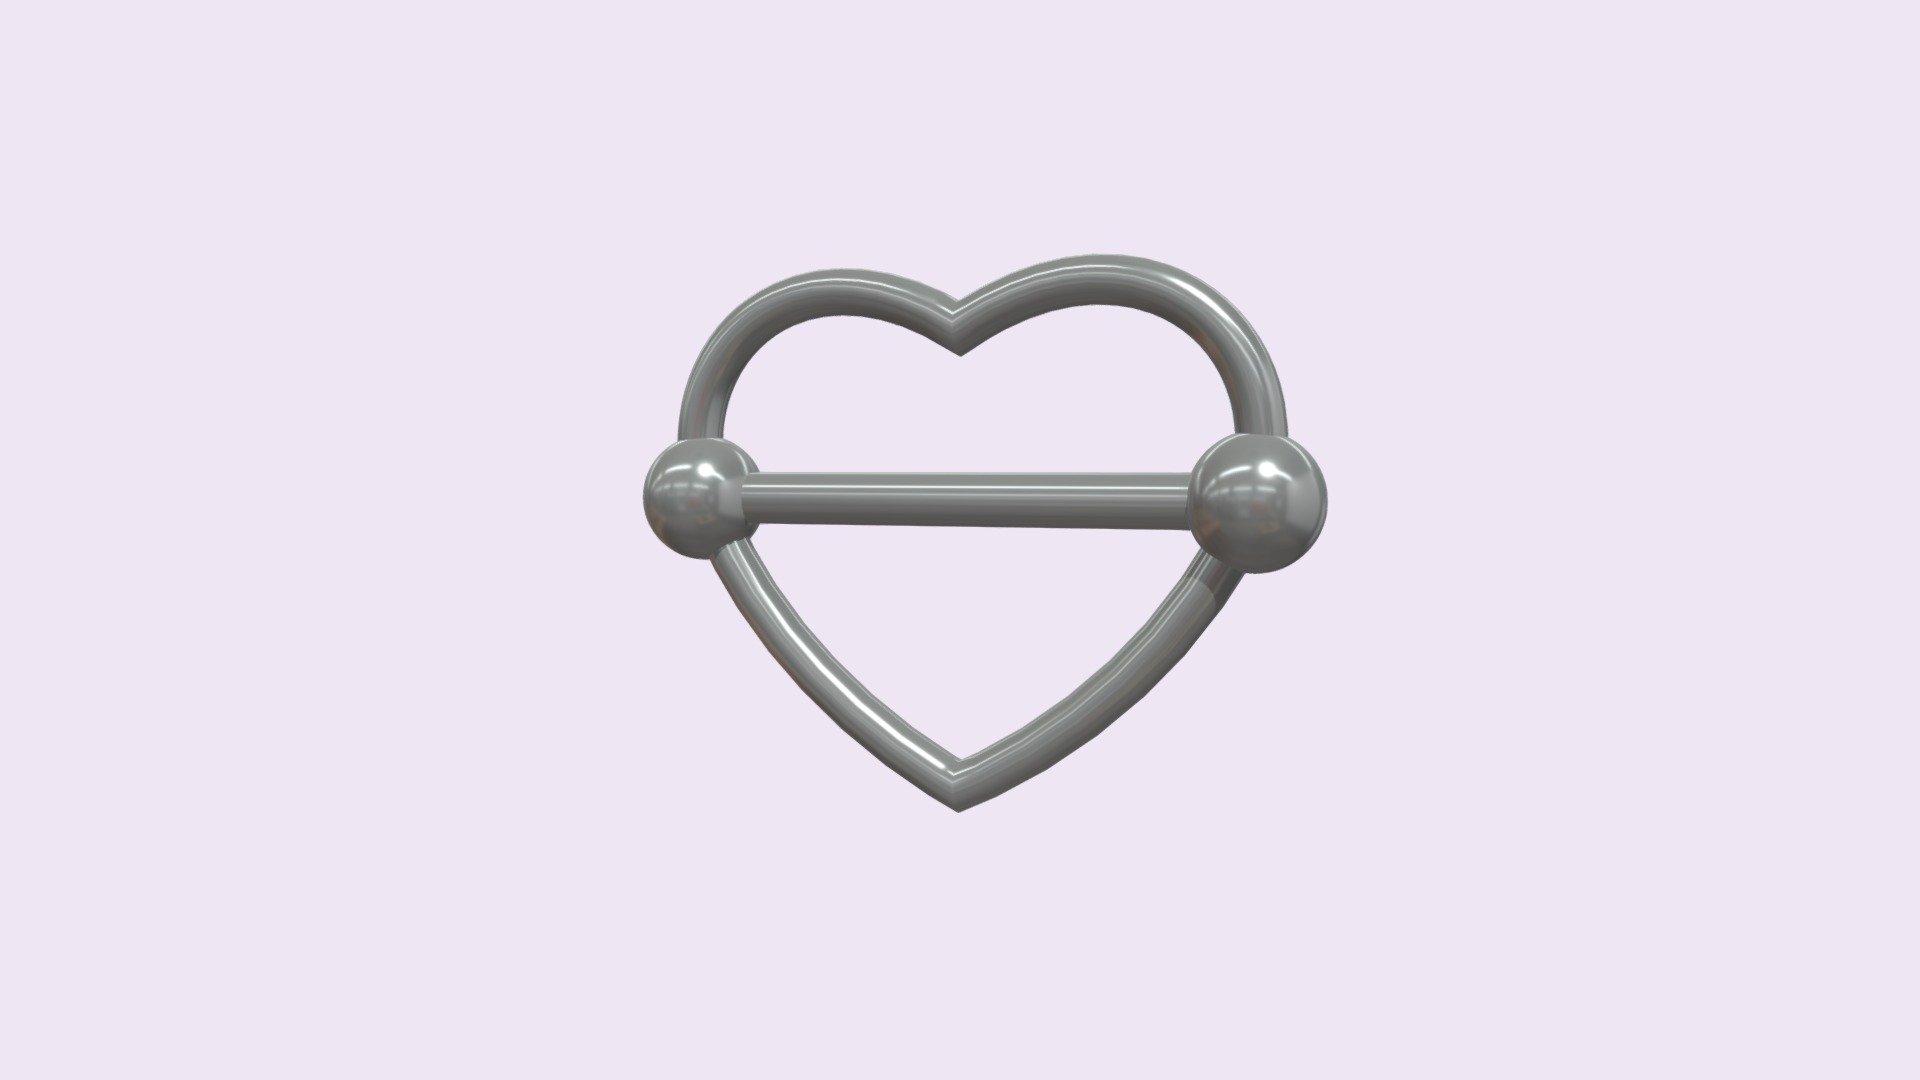 A model of a Piercing with heart shape IG:lucas_sepulvedac Twitter:Luc_sepulvedac Tiktok:lucas_sepulvedac - Piercing 01 - 3D model by luc.sepulvedac 3d model